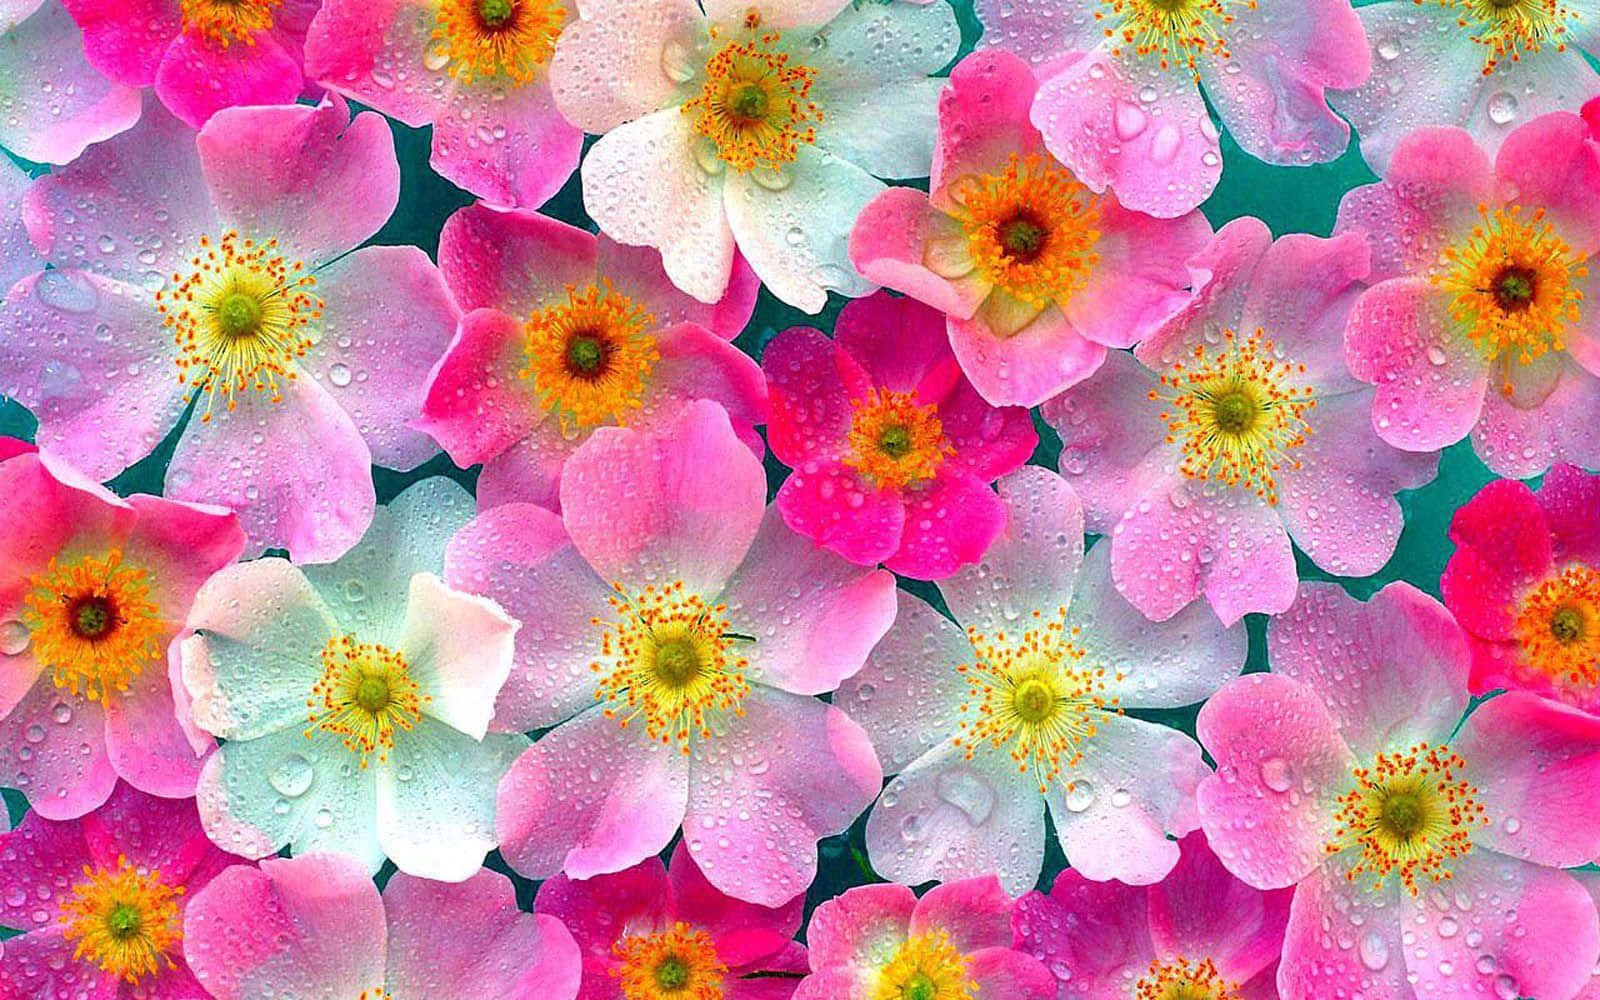 Erhellensie Ihren Tag Mit Diesem Schönen Floralen Laptop-muster Wallpaper